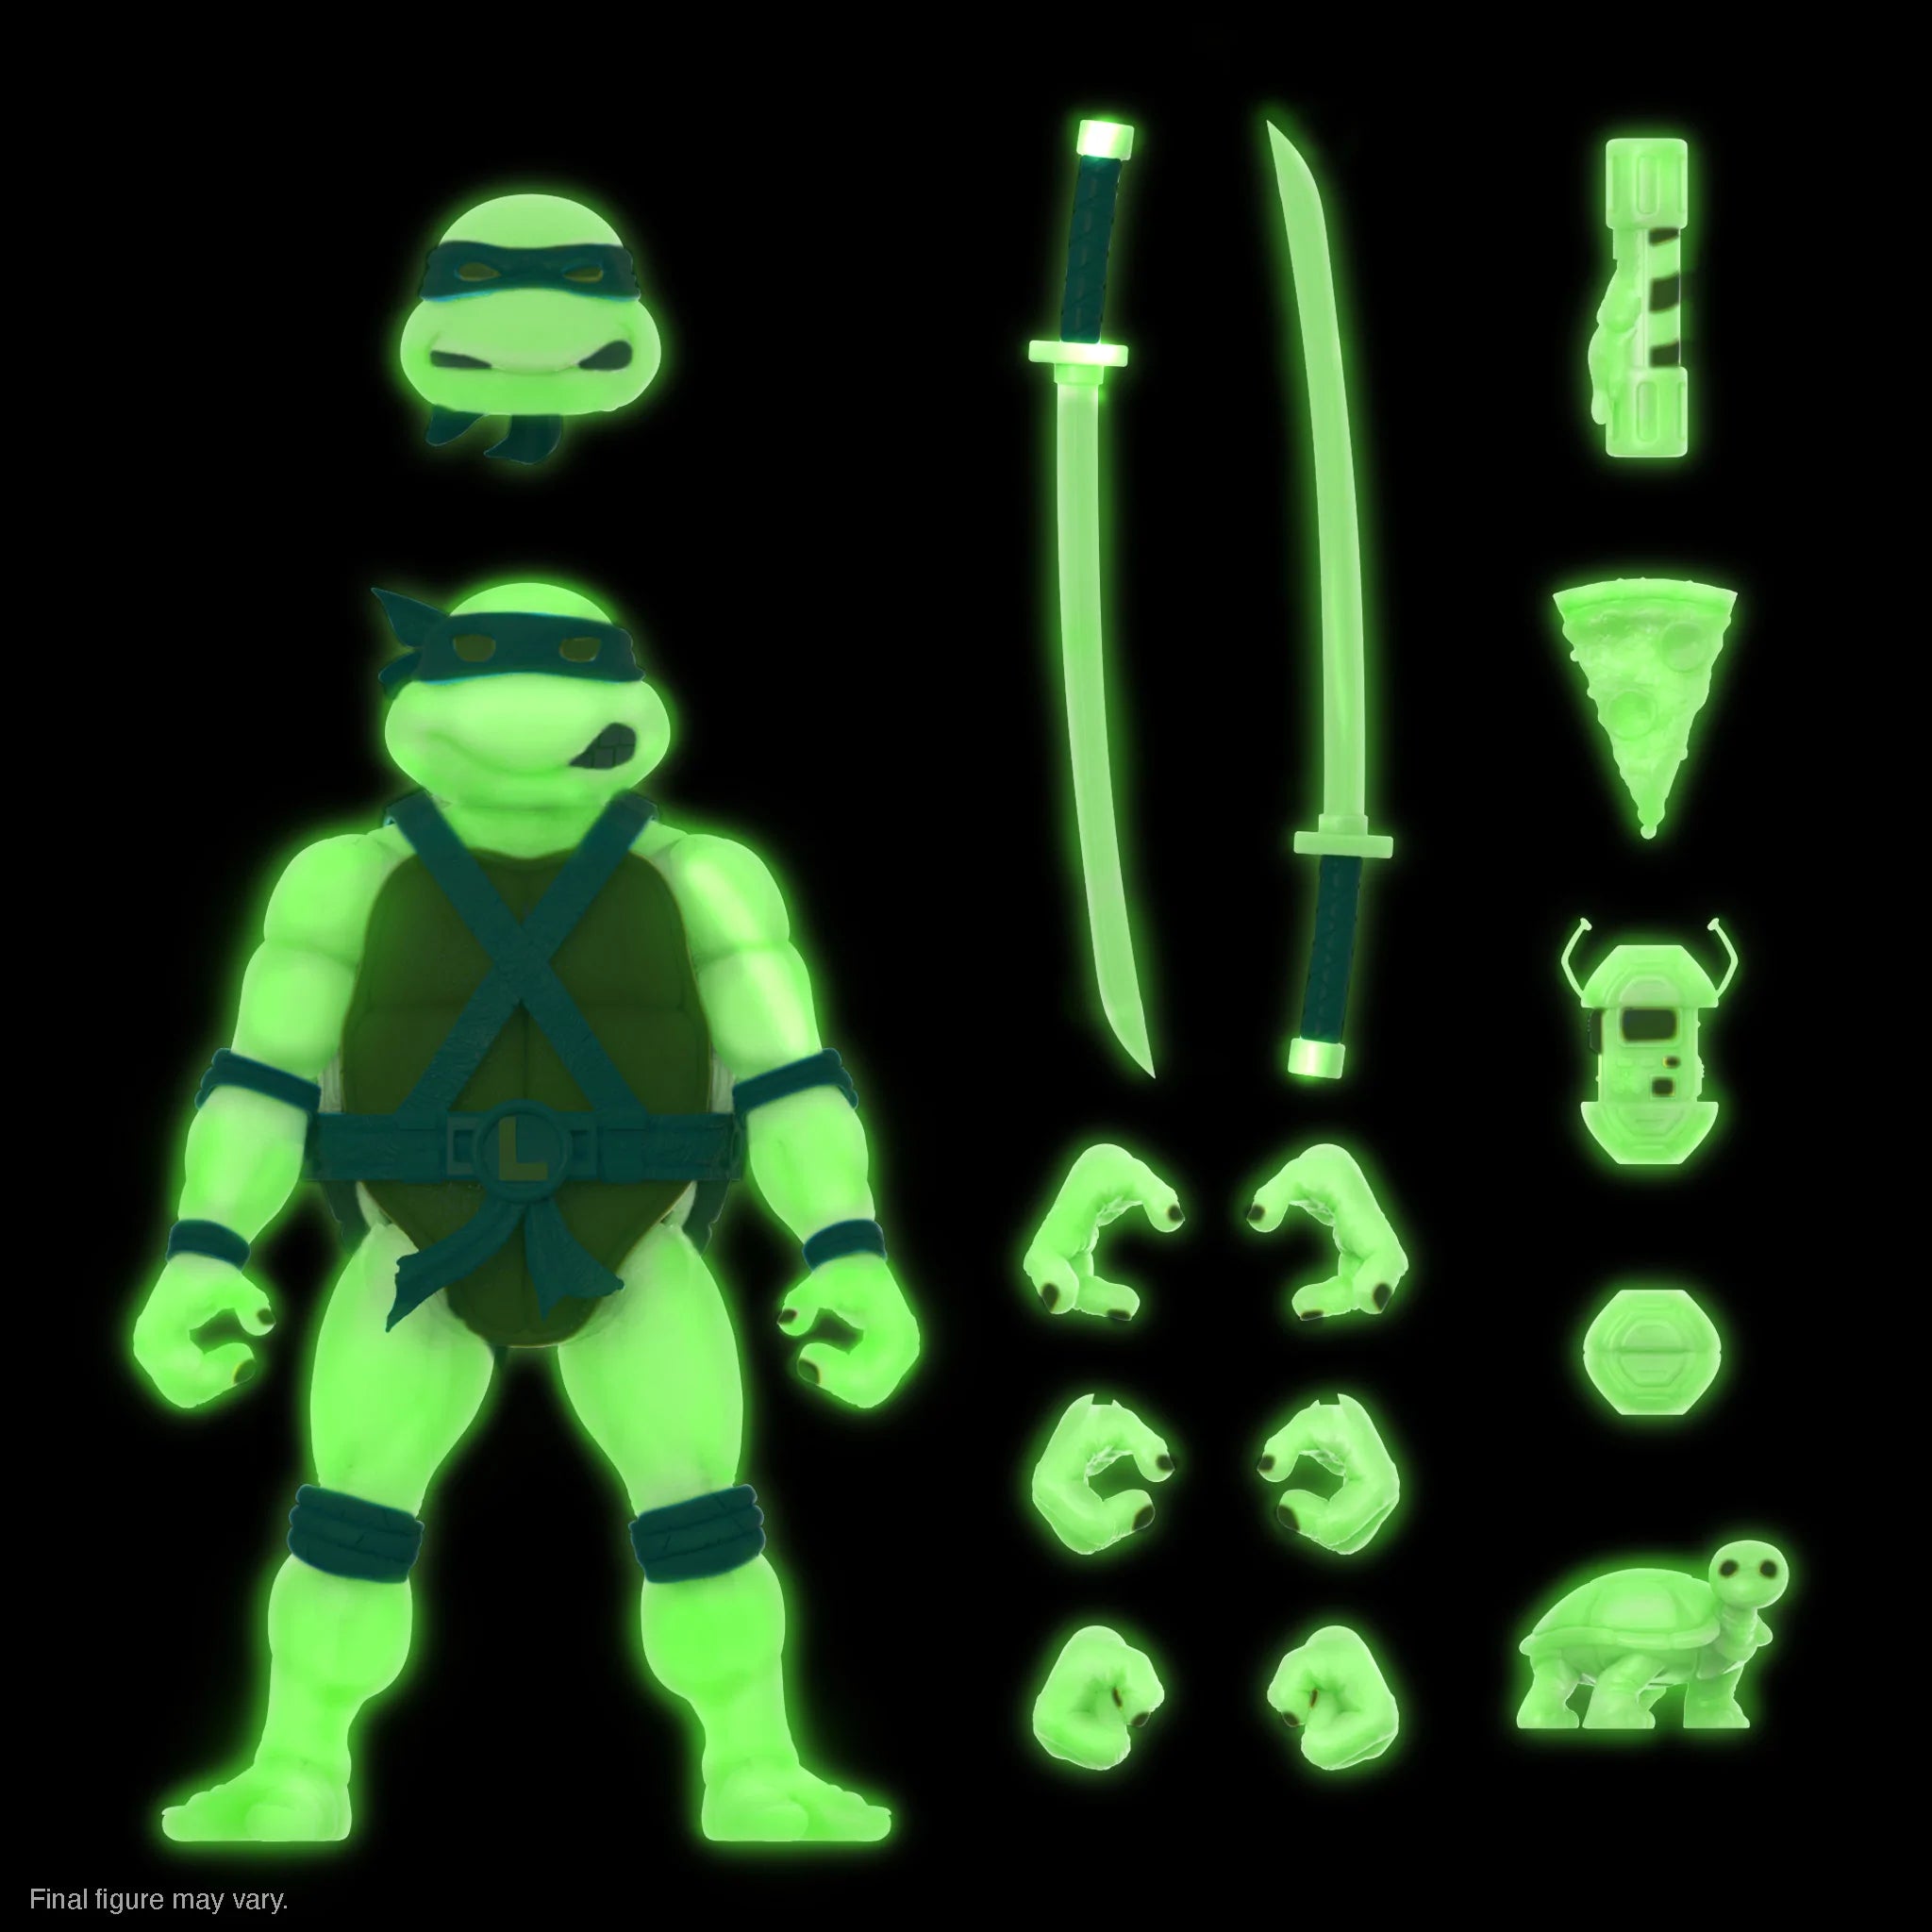 Super7 - Teenage Mutant Ninja Turtles ULTIMATES! Exclusive - Leonardo Mutagen Ooze - Marvelous Toys